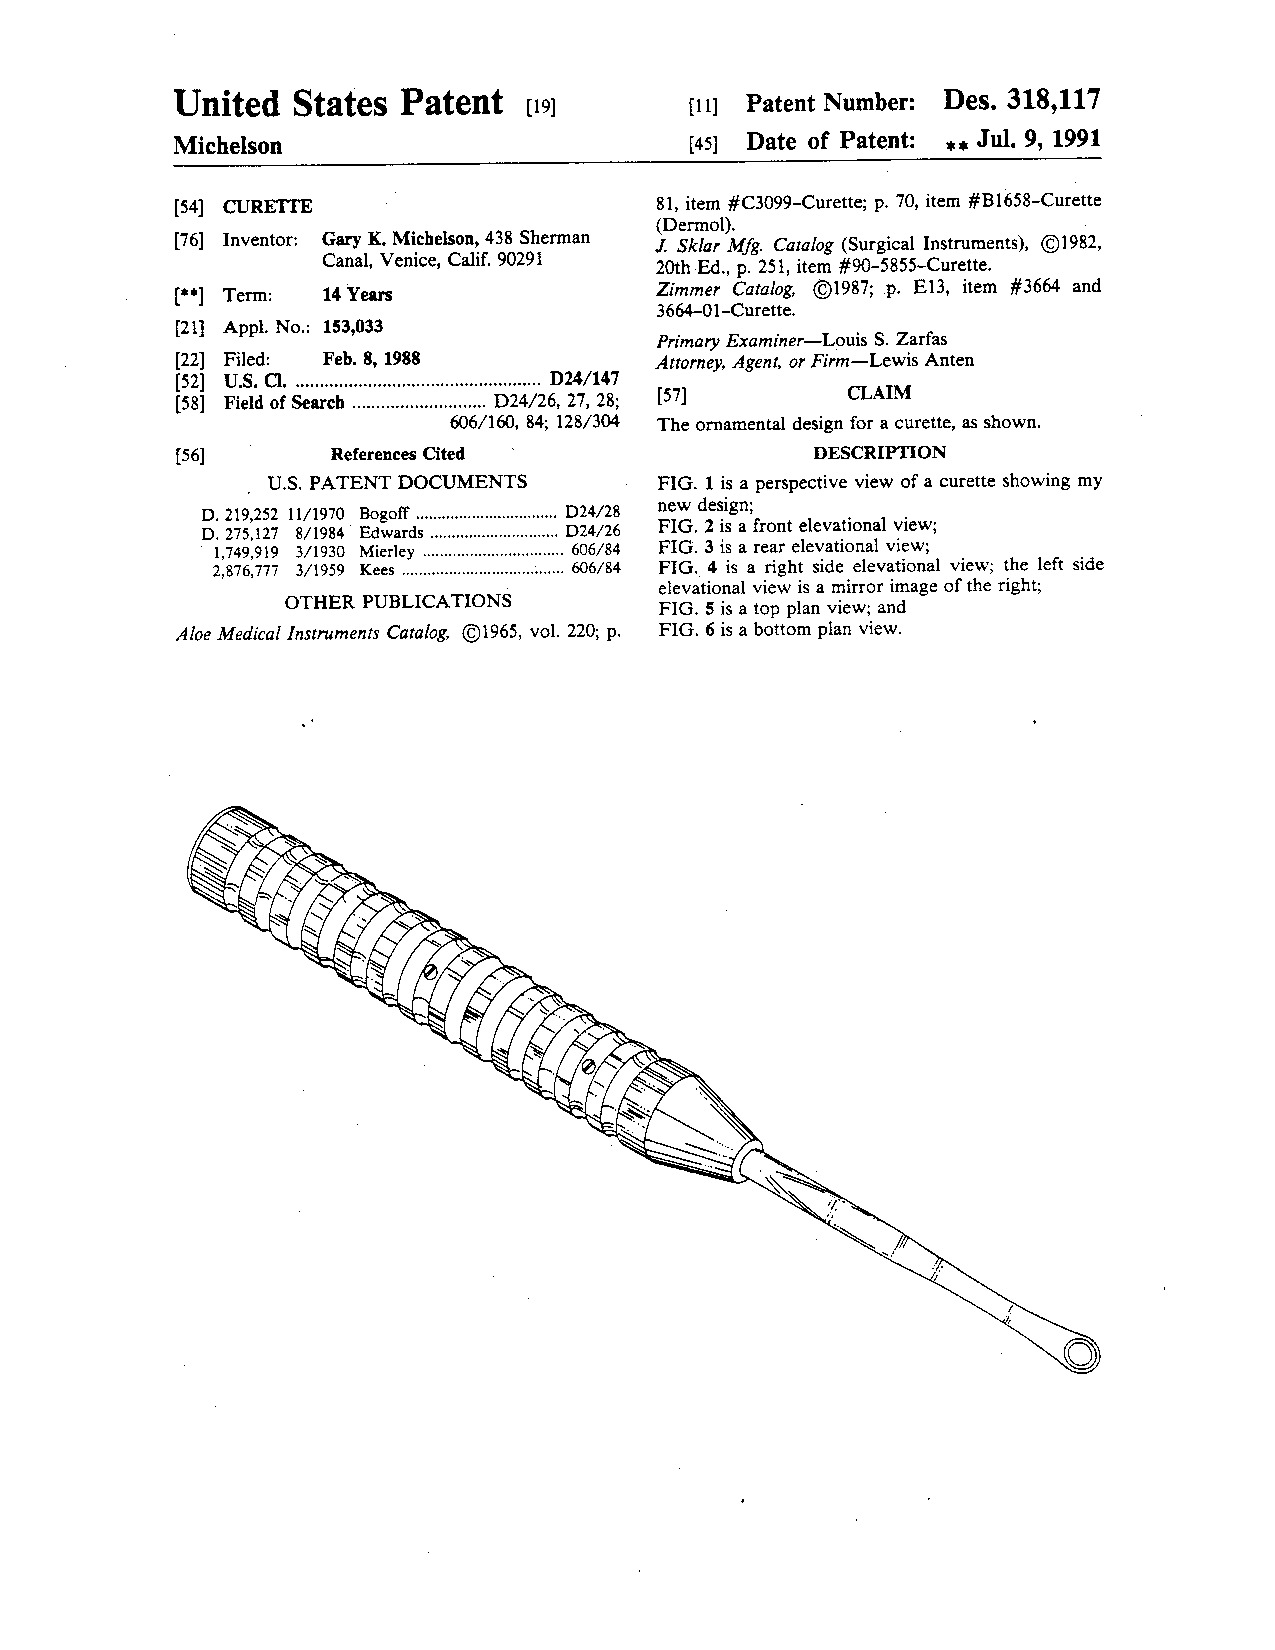 Curette - Patent D318,117